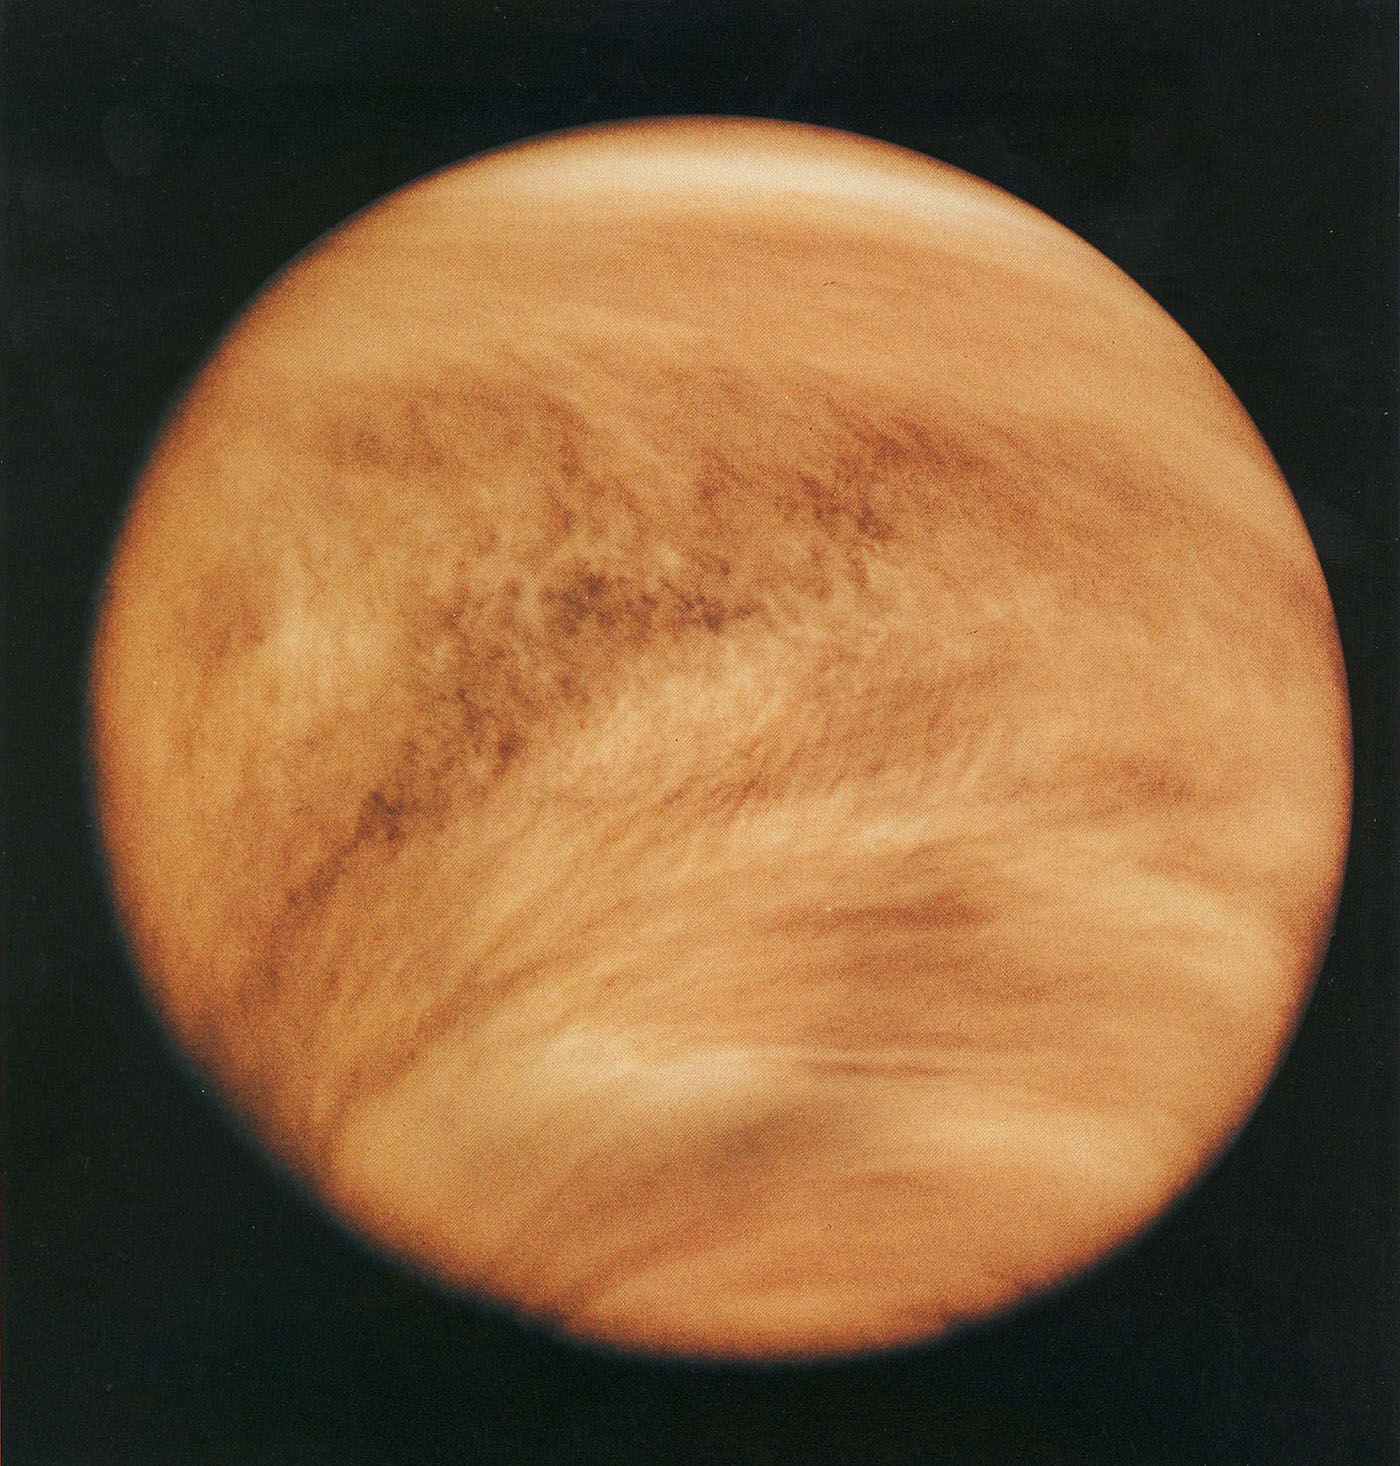 Венера — вторая внутренняя планета Солнечной системы с периодом обращения в 224,7 земных суток. Названа именем Венеры, богини любви из римского пантеона. Это единственная из восьми основных планет Солнечной системы, получившая название в честь женского божества.